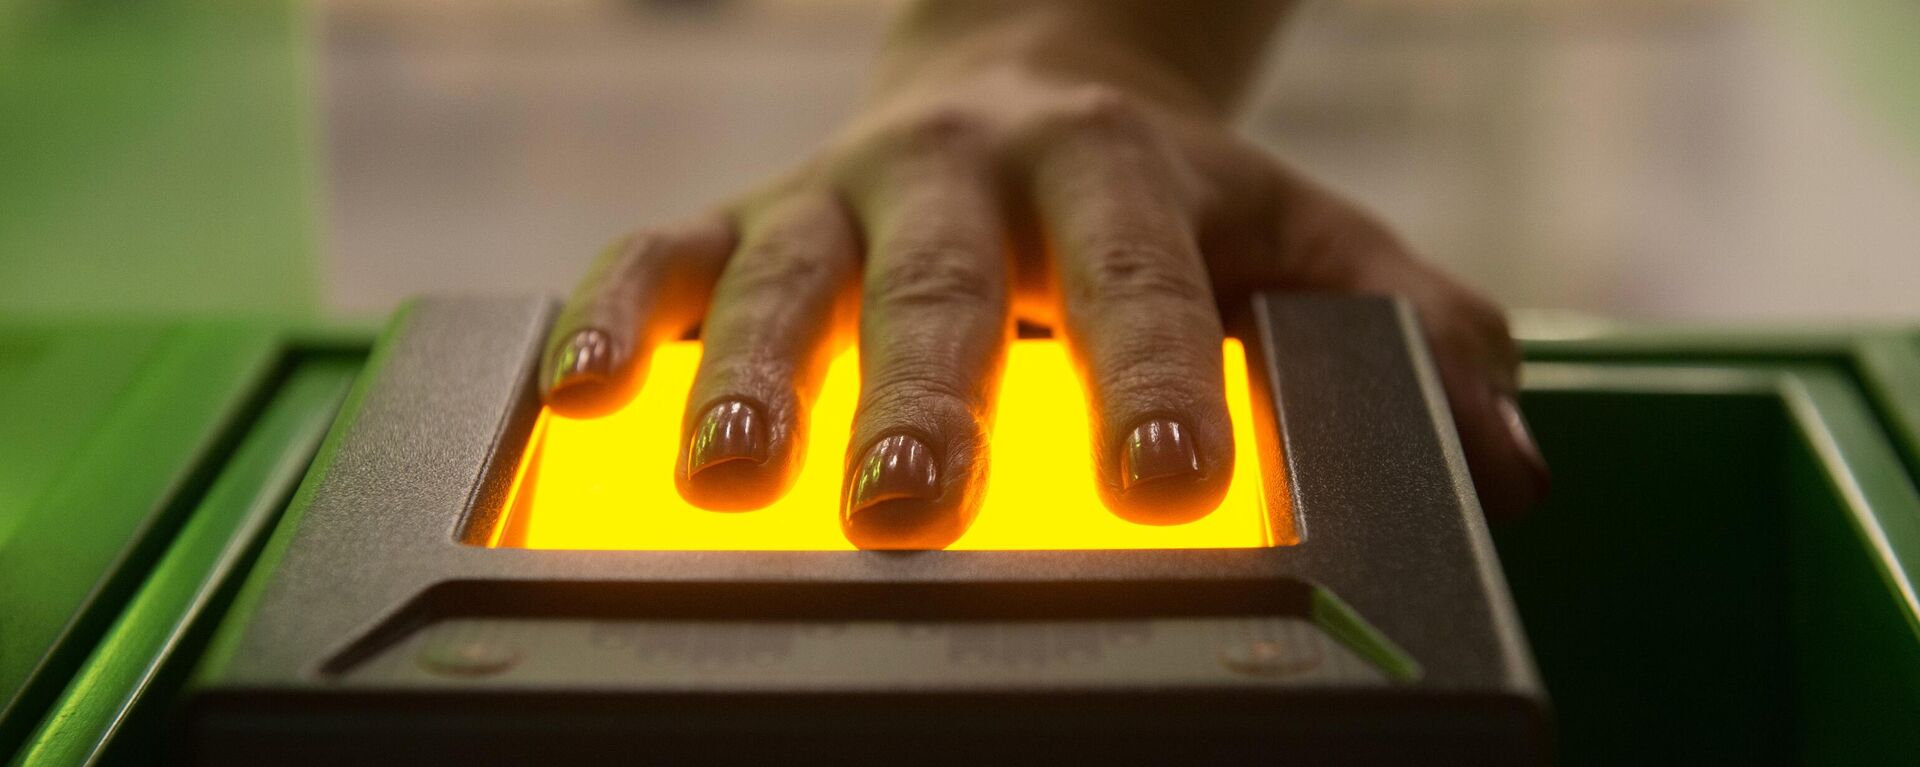 Сканирующее отпечатки пальцев устройство в визовом центре - Sputnik Литва, 1920, 30.05.2021